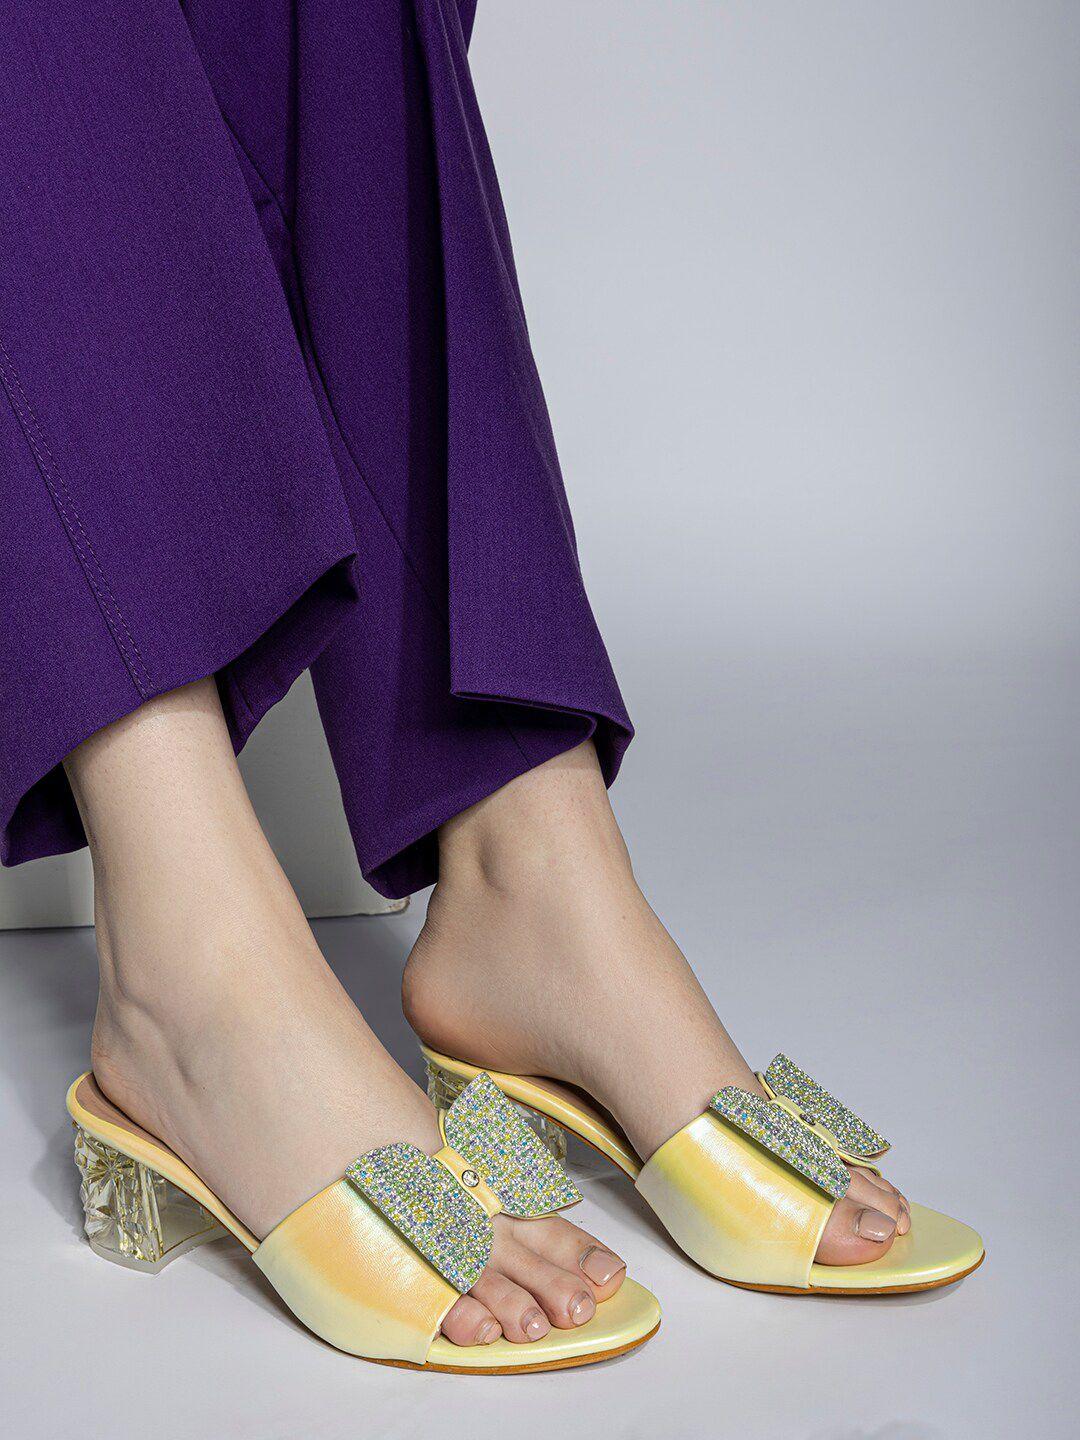 shezone embellished block heels